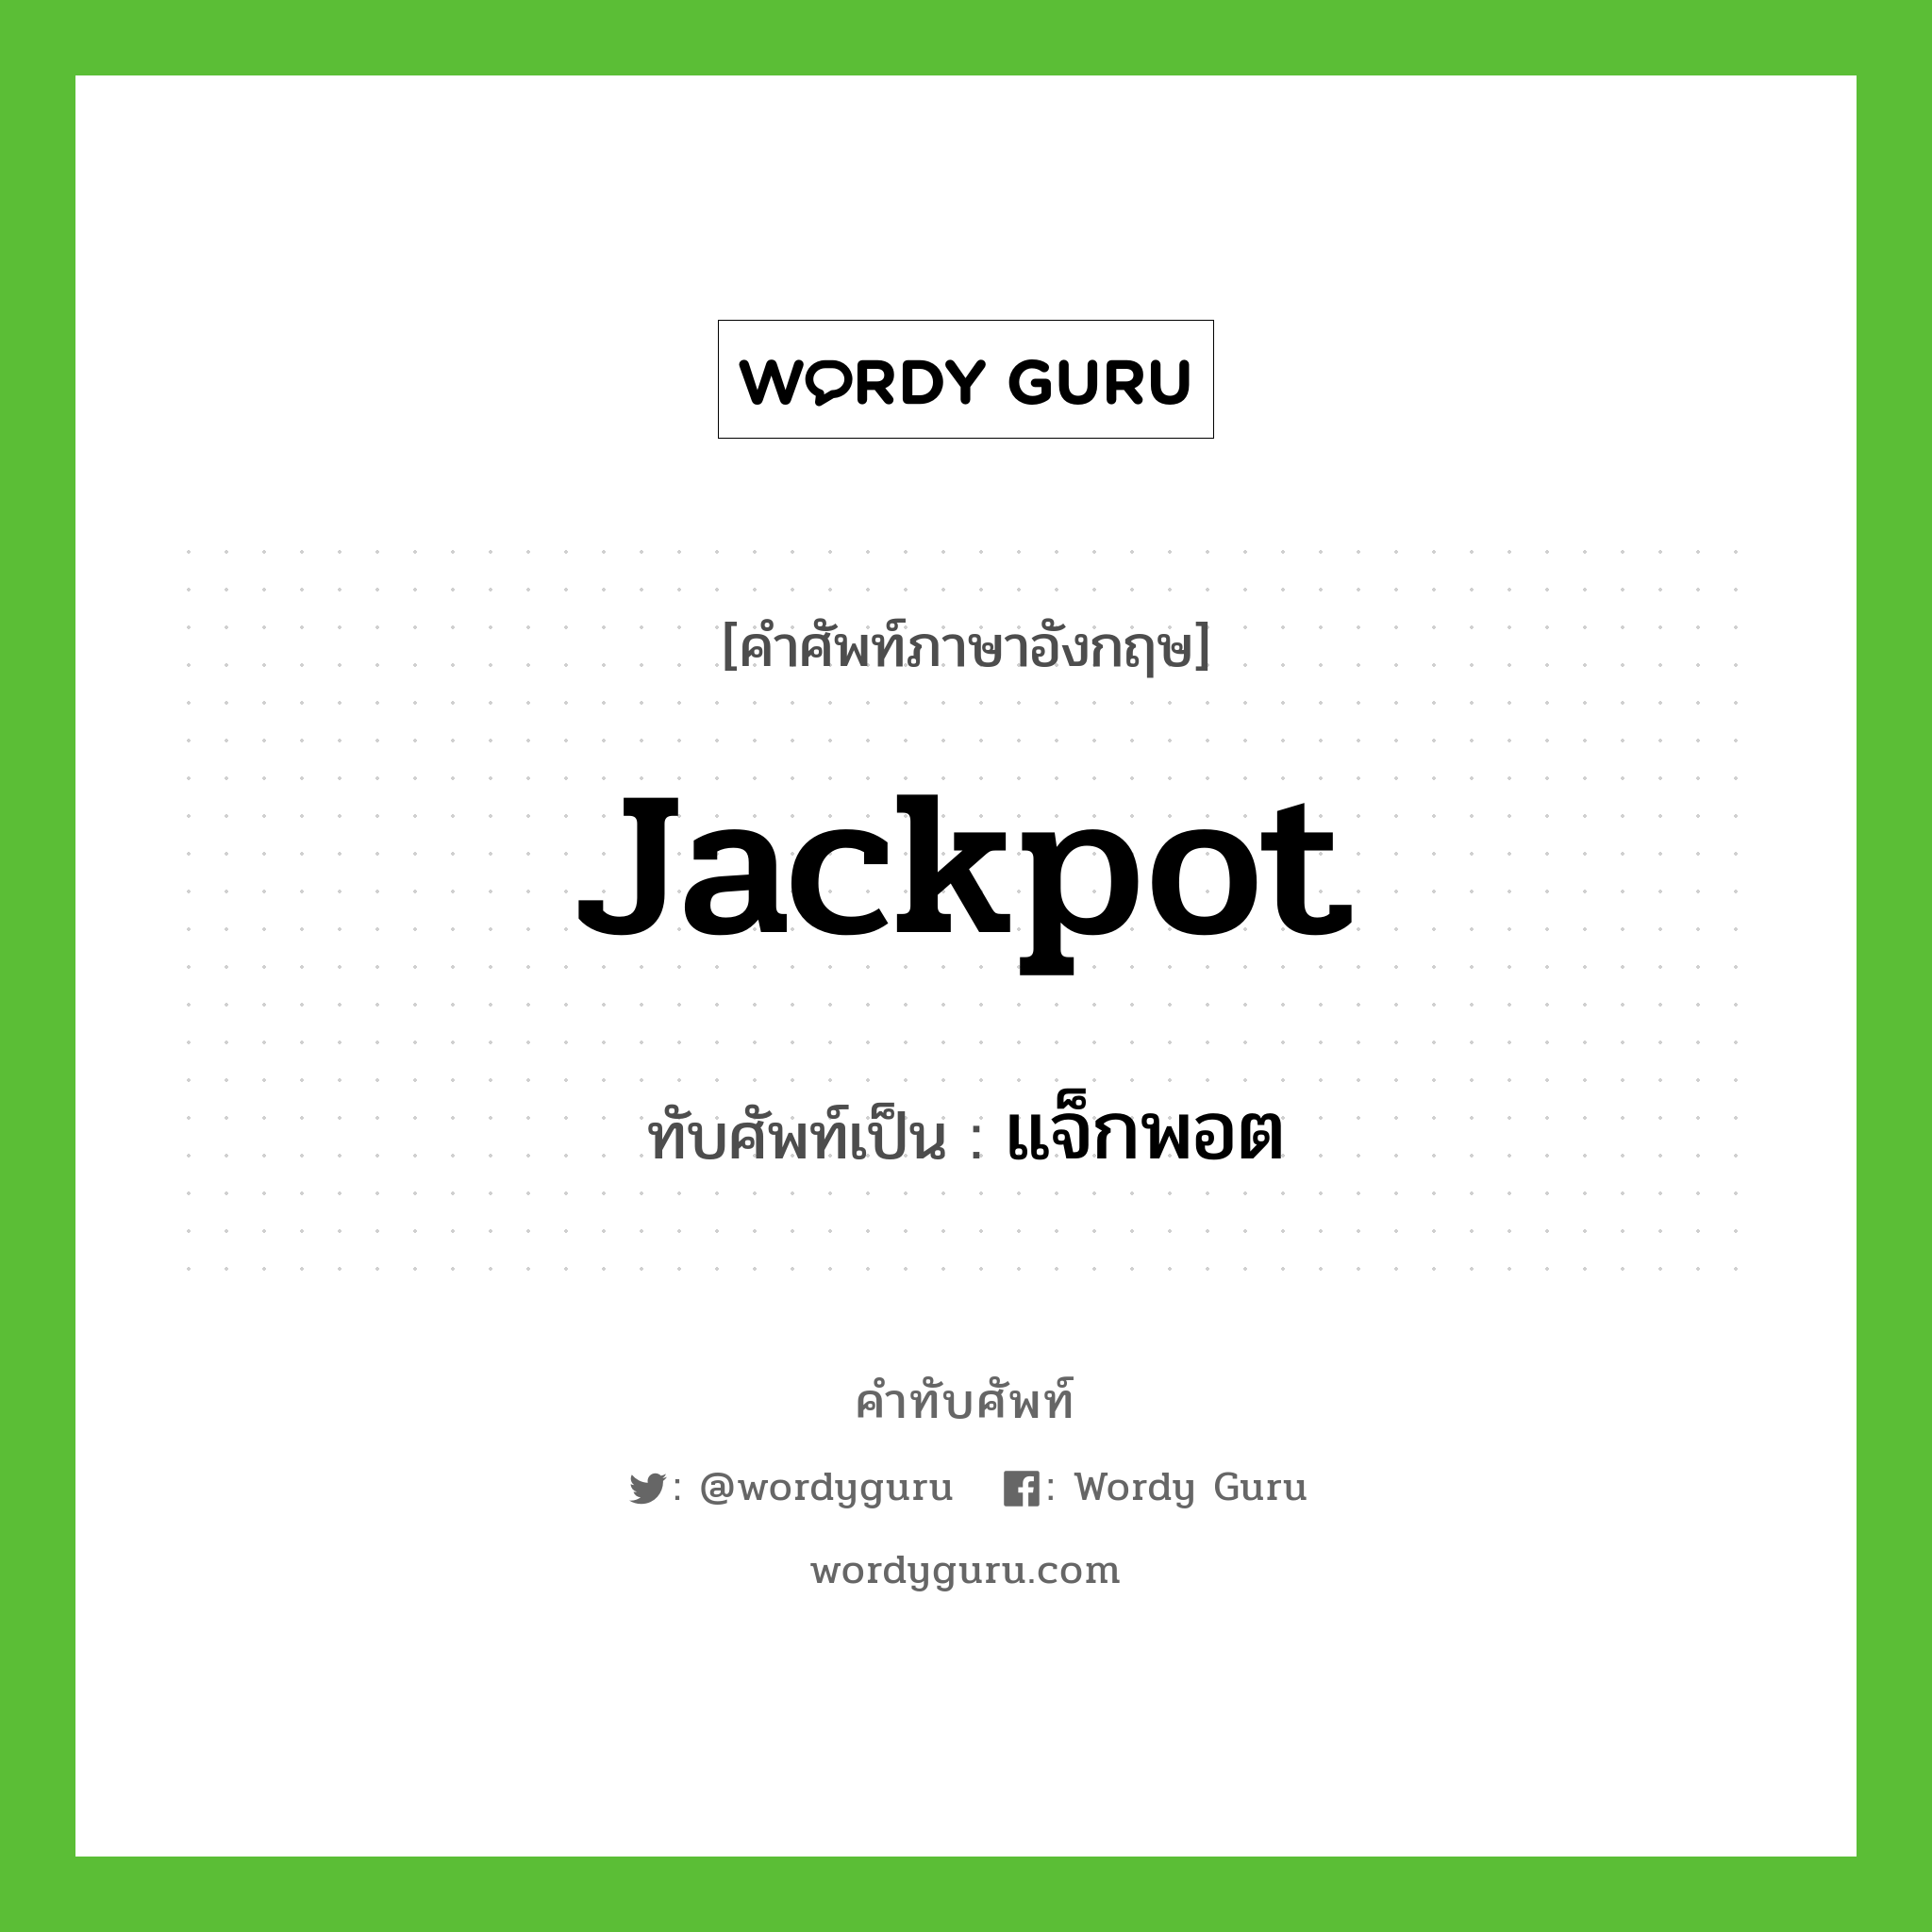 jackpot เขียนเป็นคำไทยว่าอะไร?, คำศัพท์ภาษาอังกฤษ jackpot ทับศัพท์เป็น แจ็กพอต